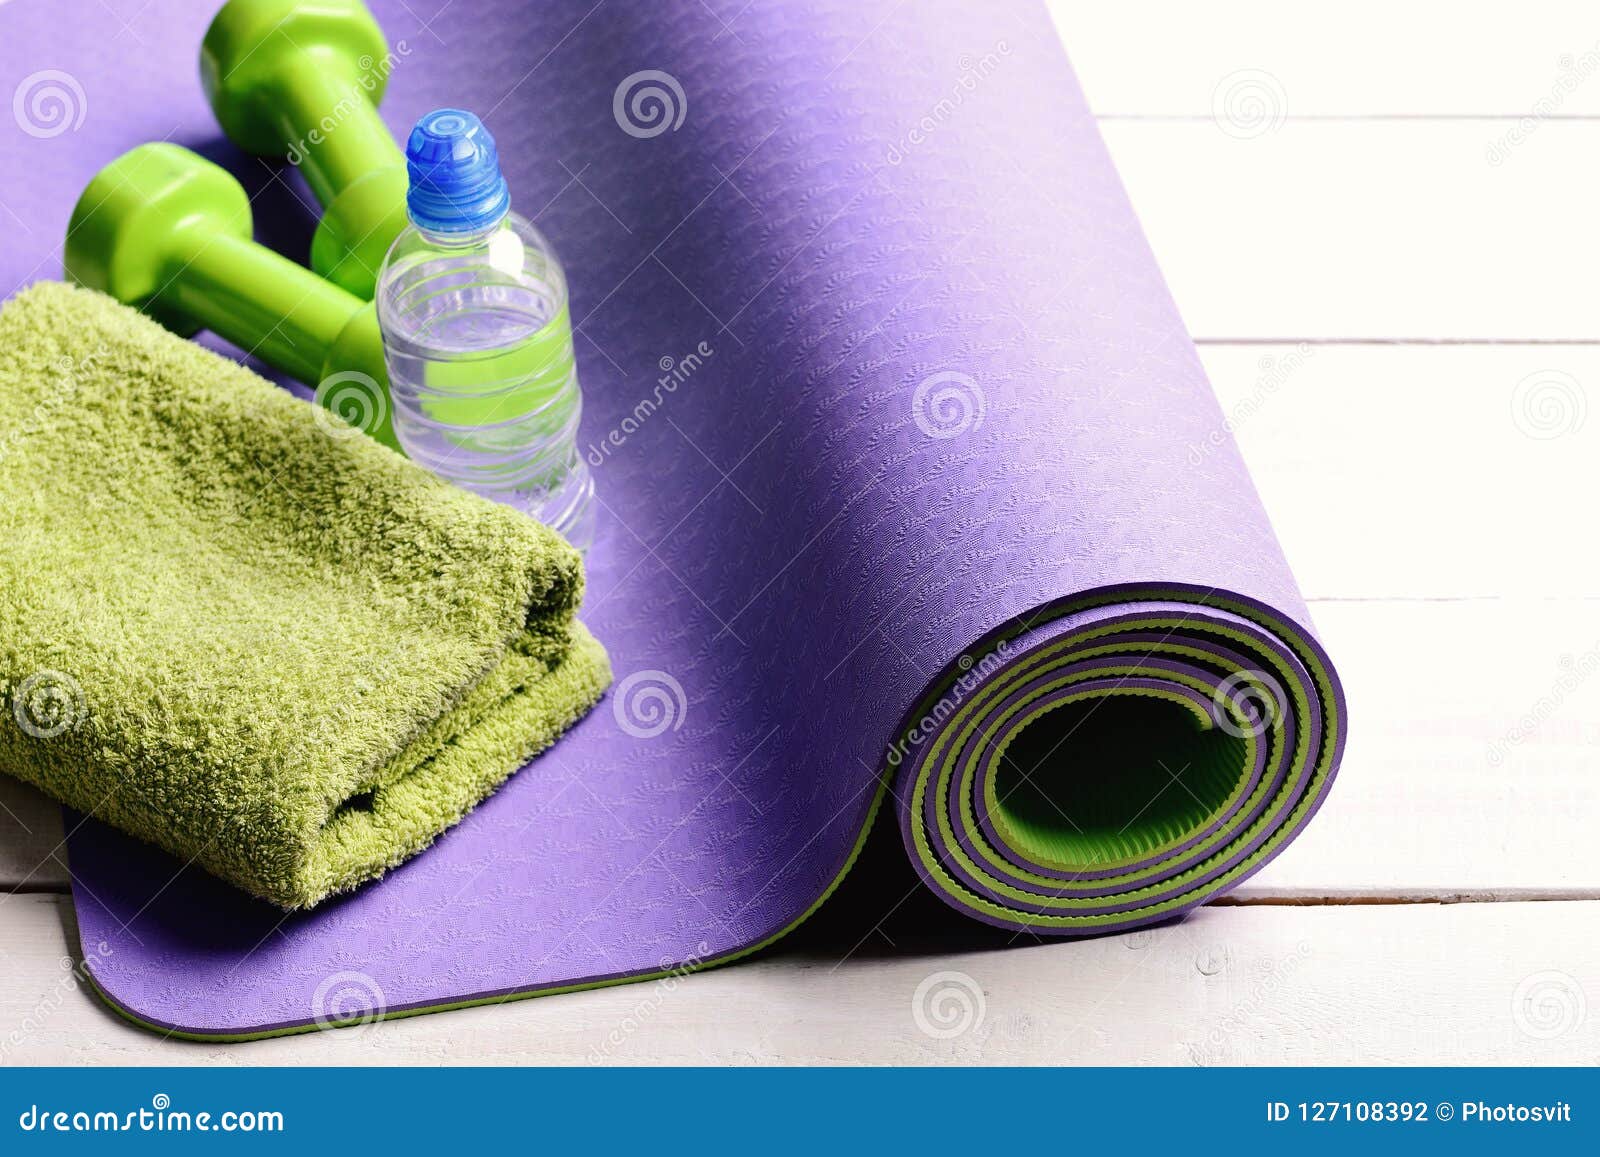 plastic free yoga mat